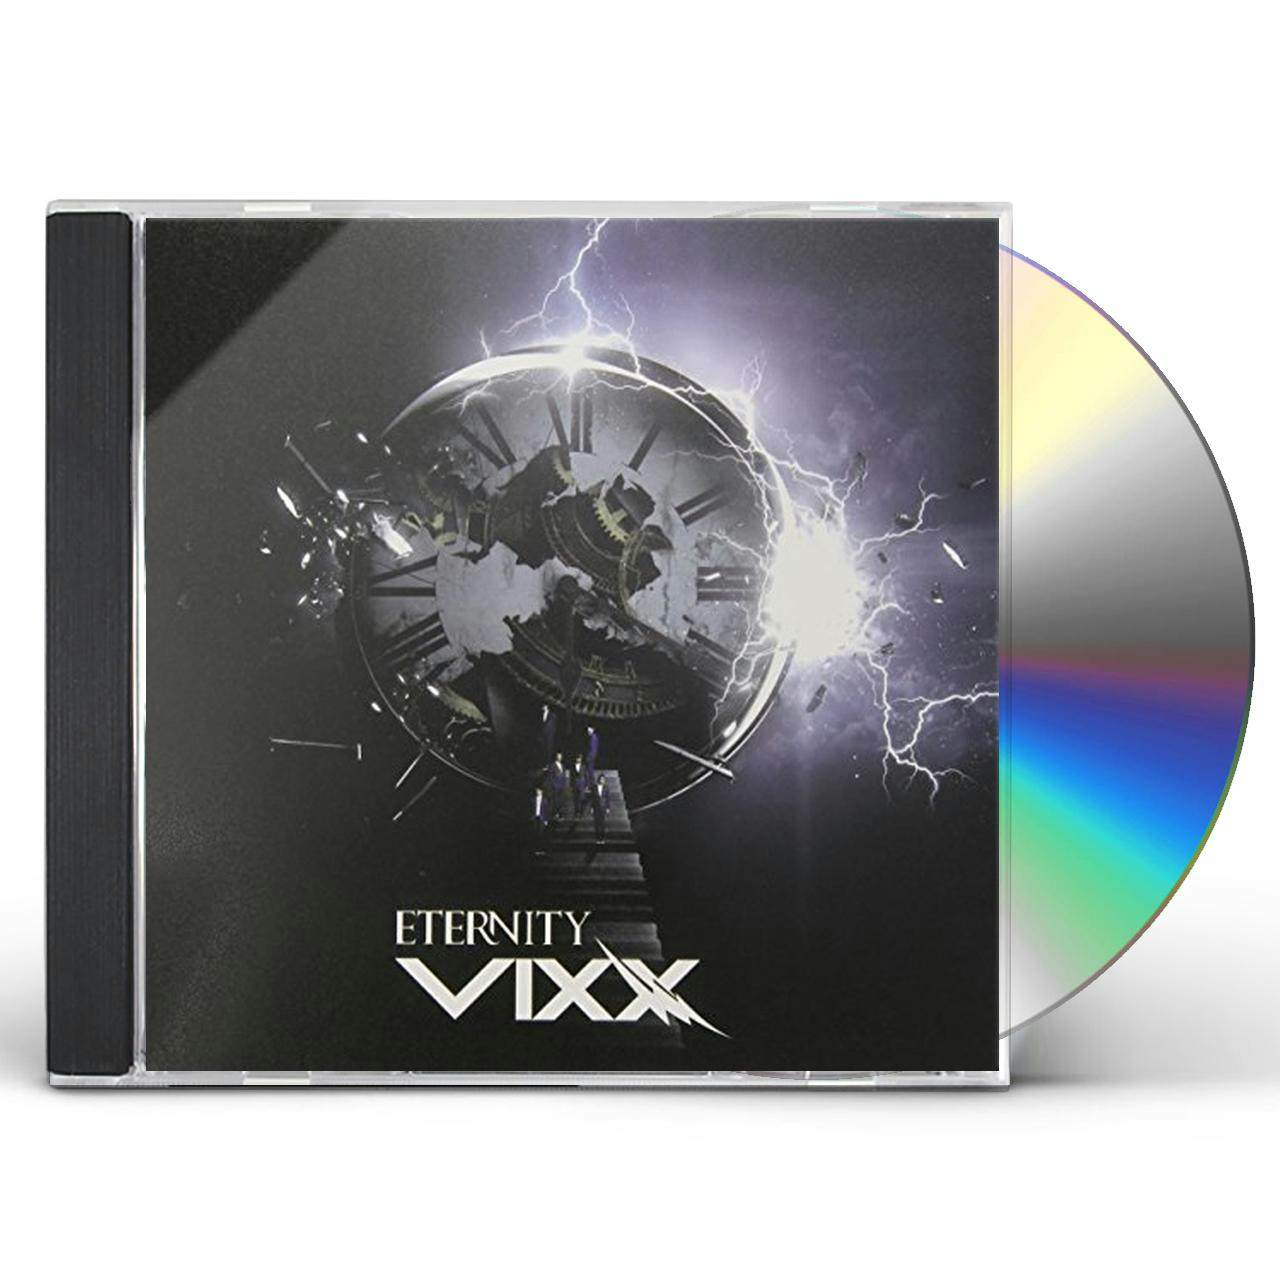 vixx only u album